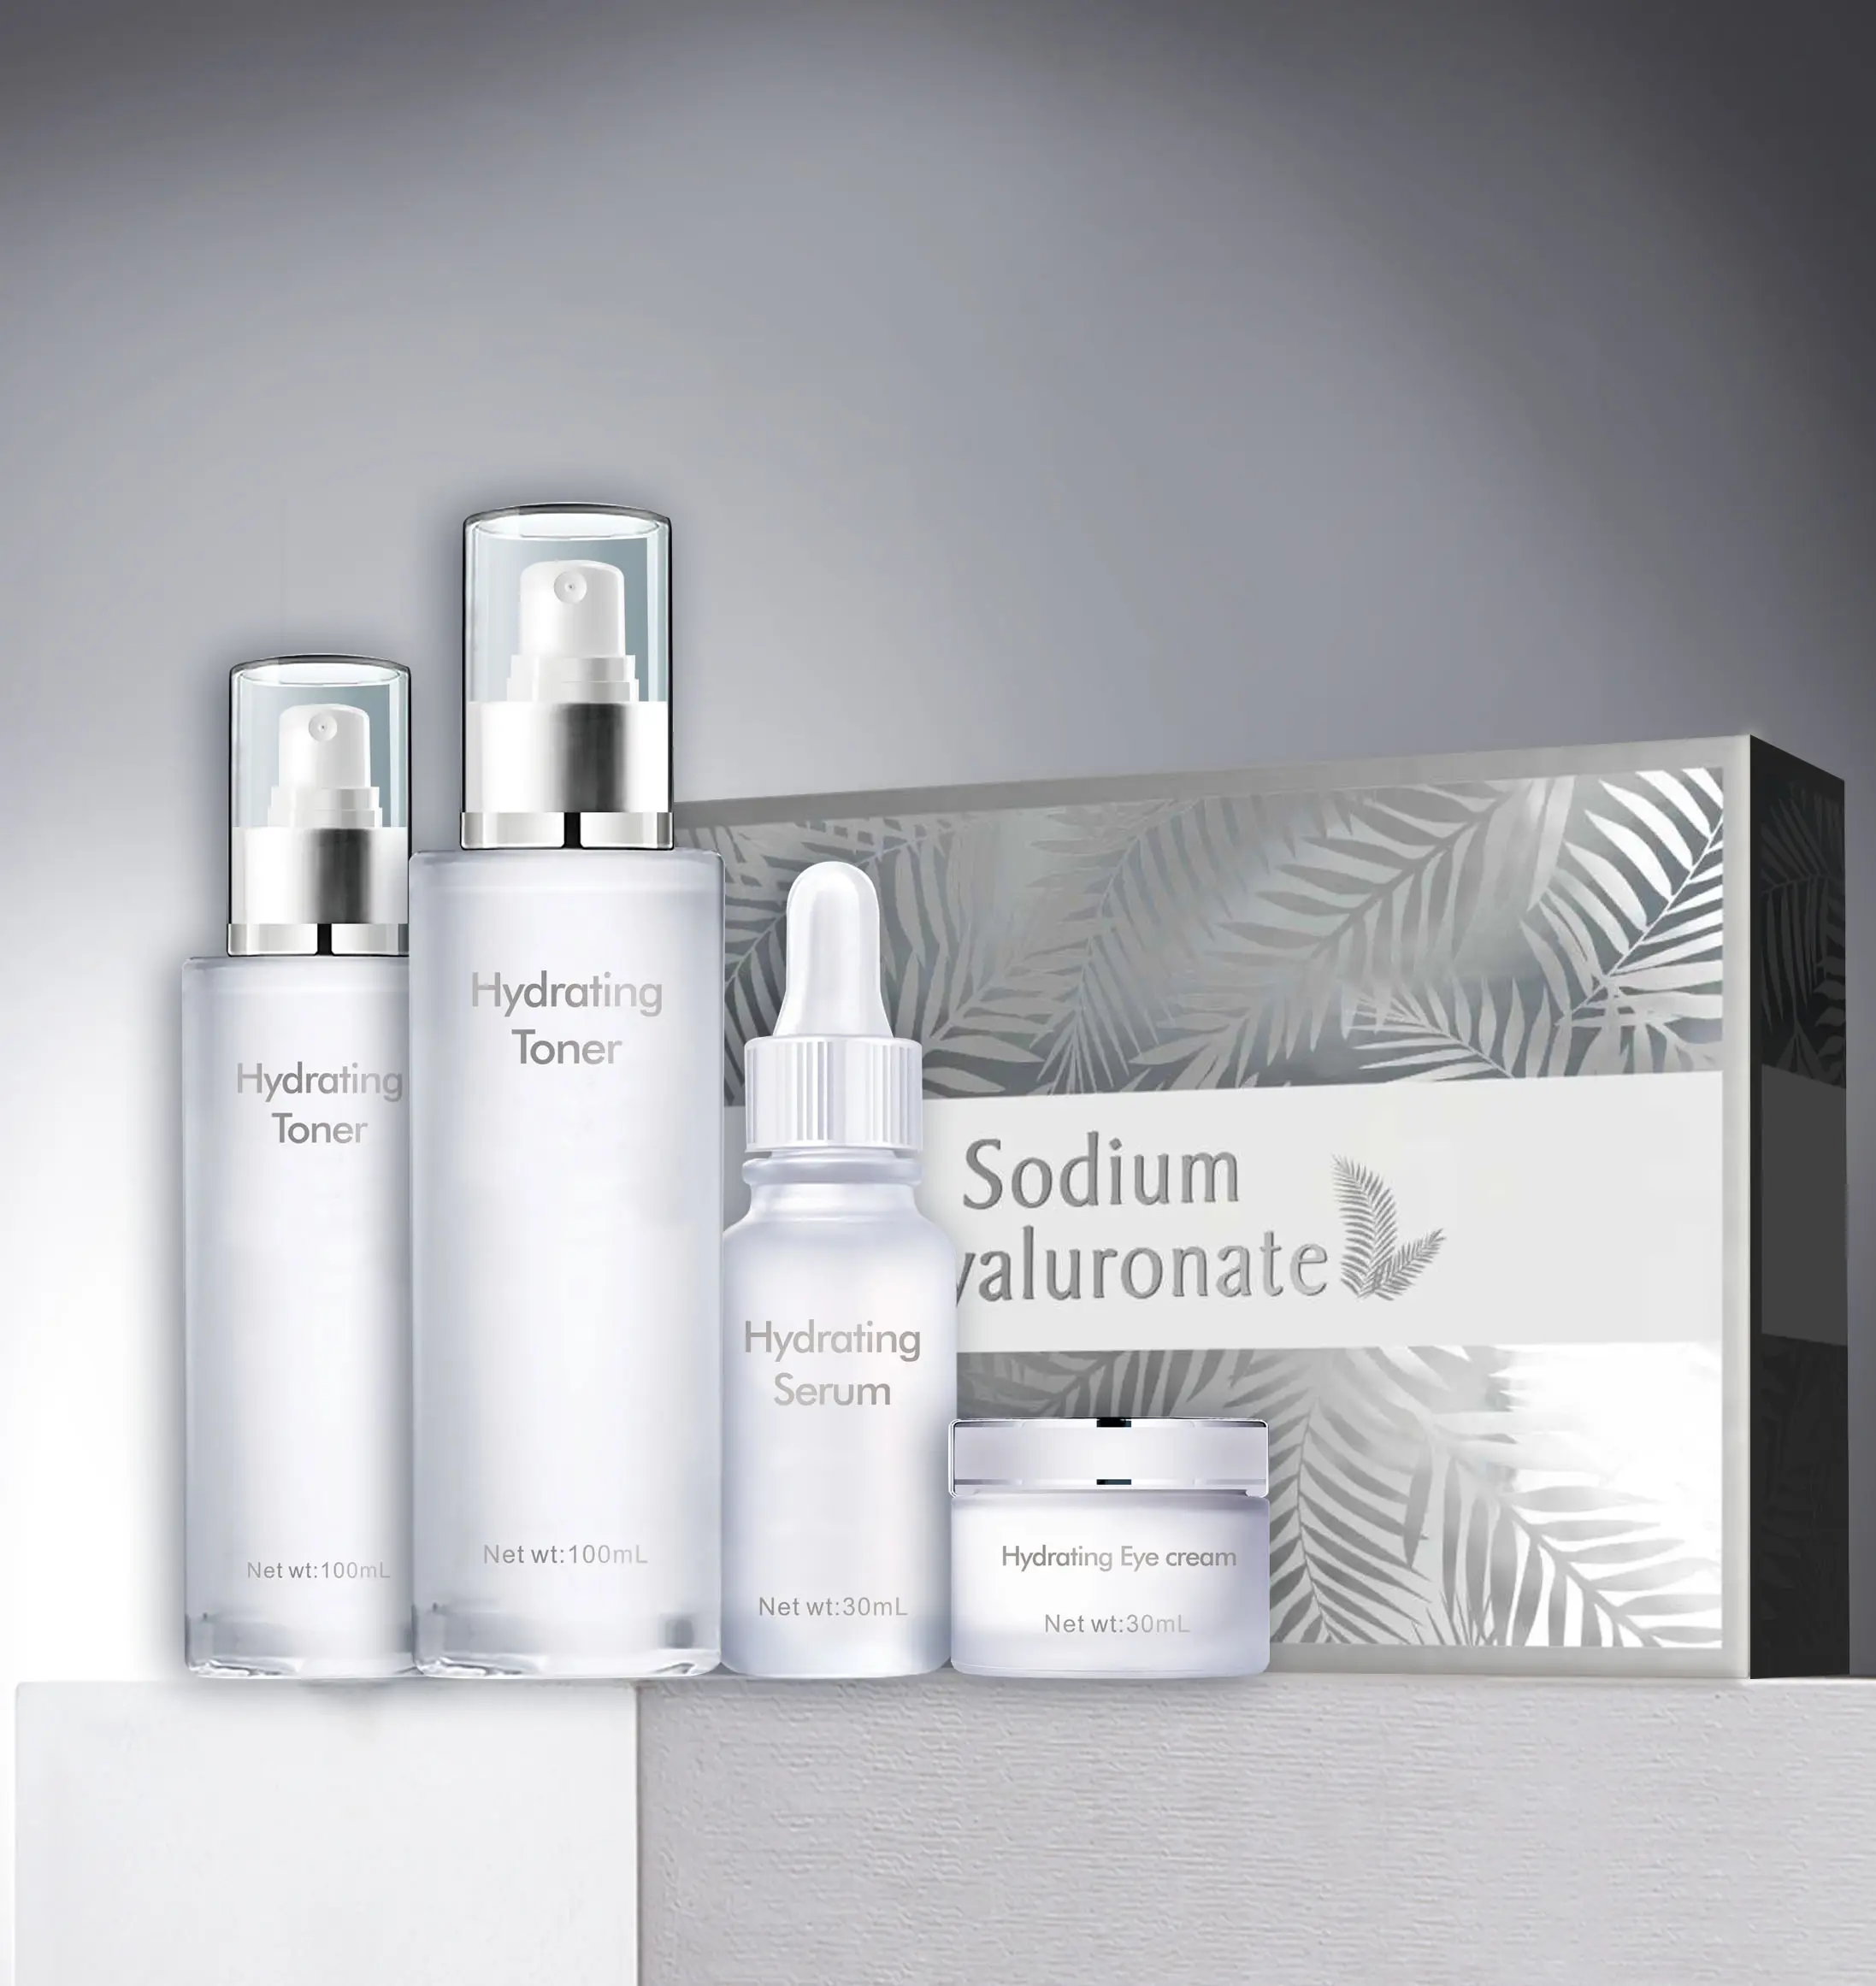 Heißer Verkauf Berufs Schönheit Hautpflege Feuchtigkeits Hautpflege Produkte Hyaluronsäure Serum Hautpflege Set